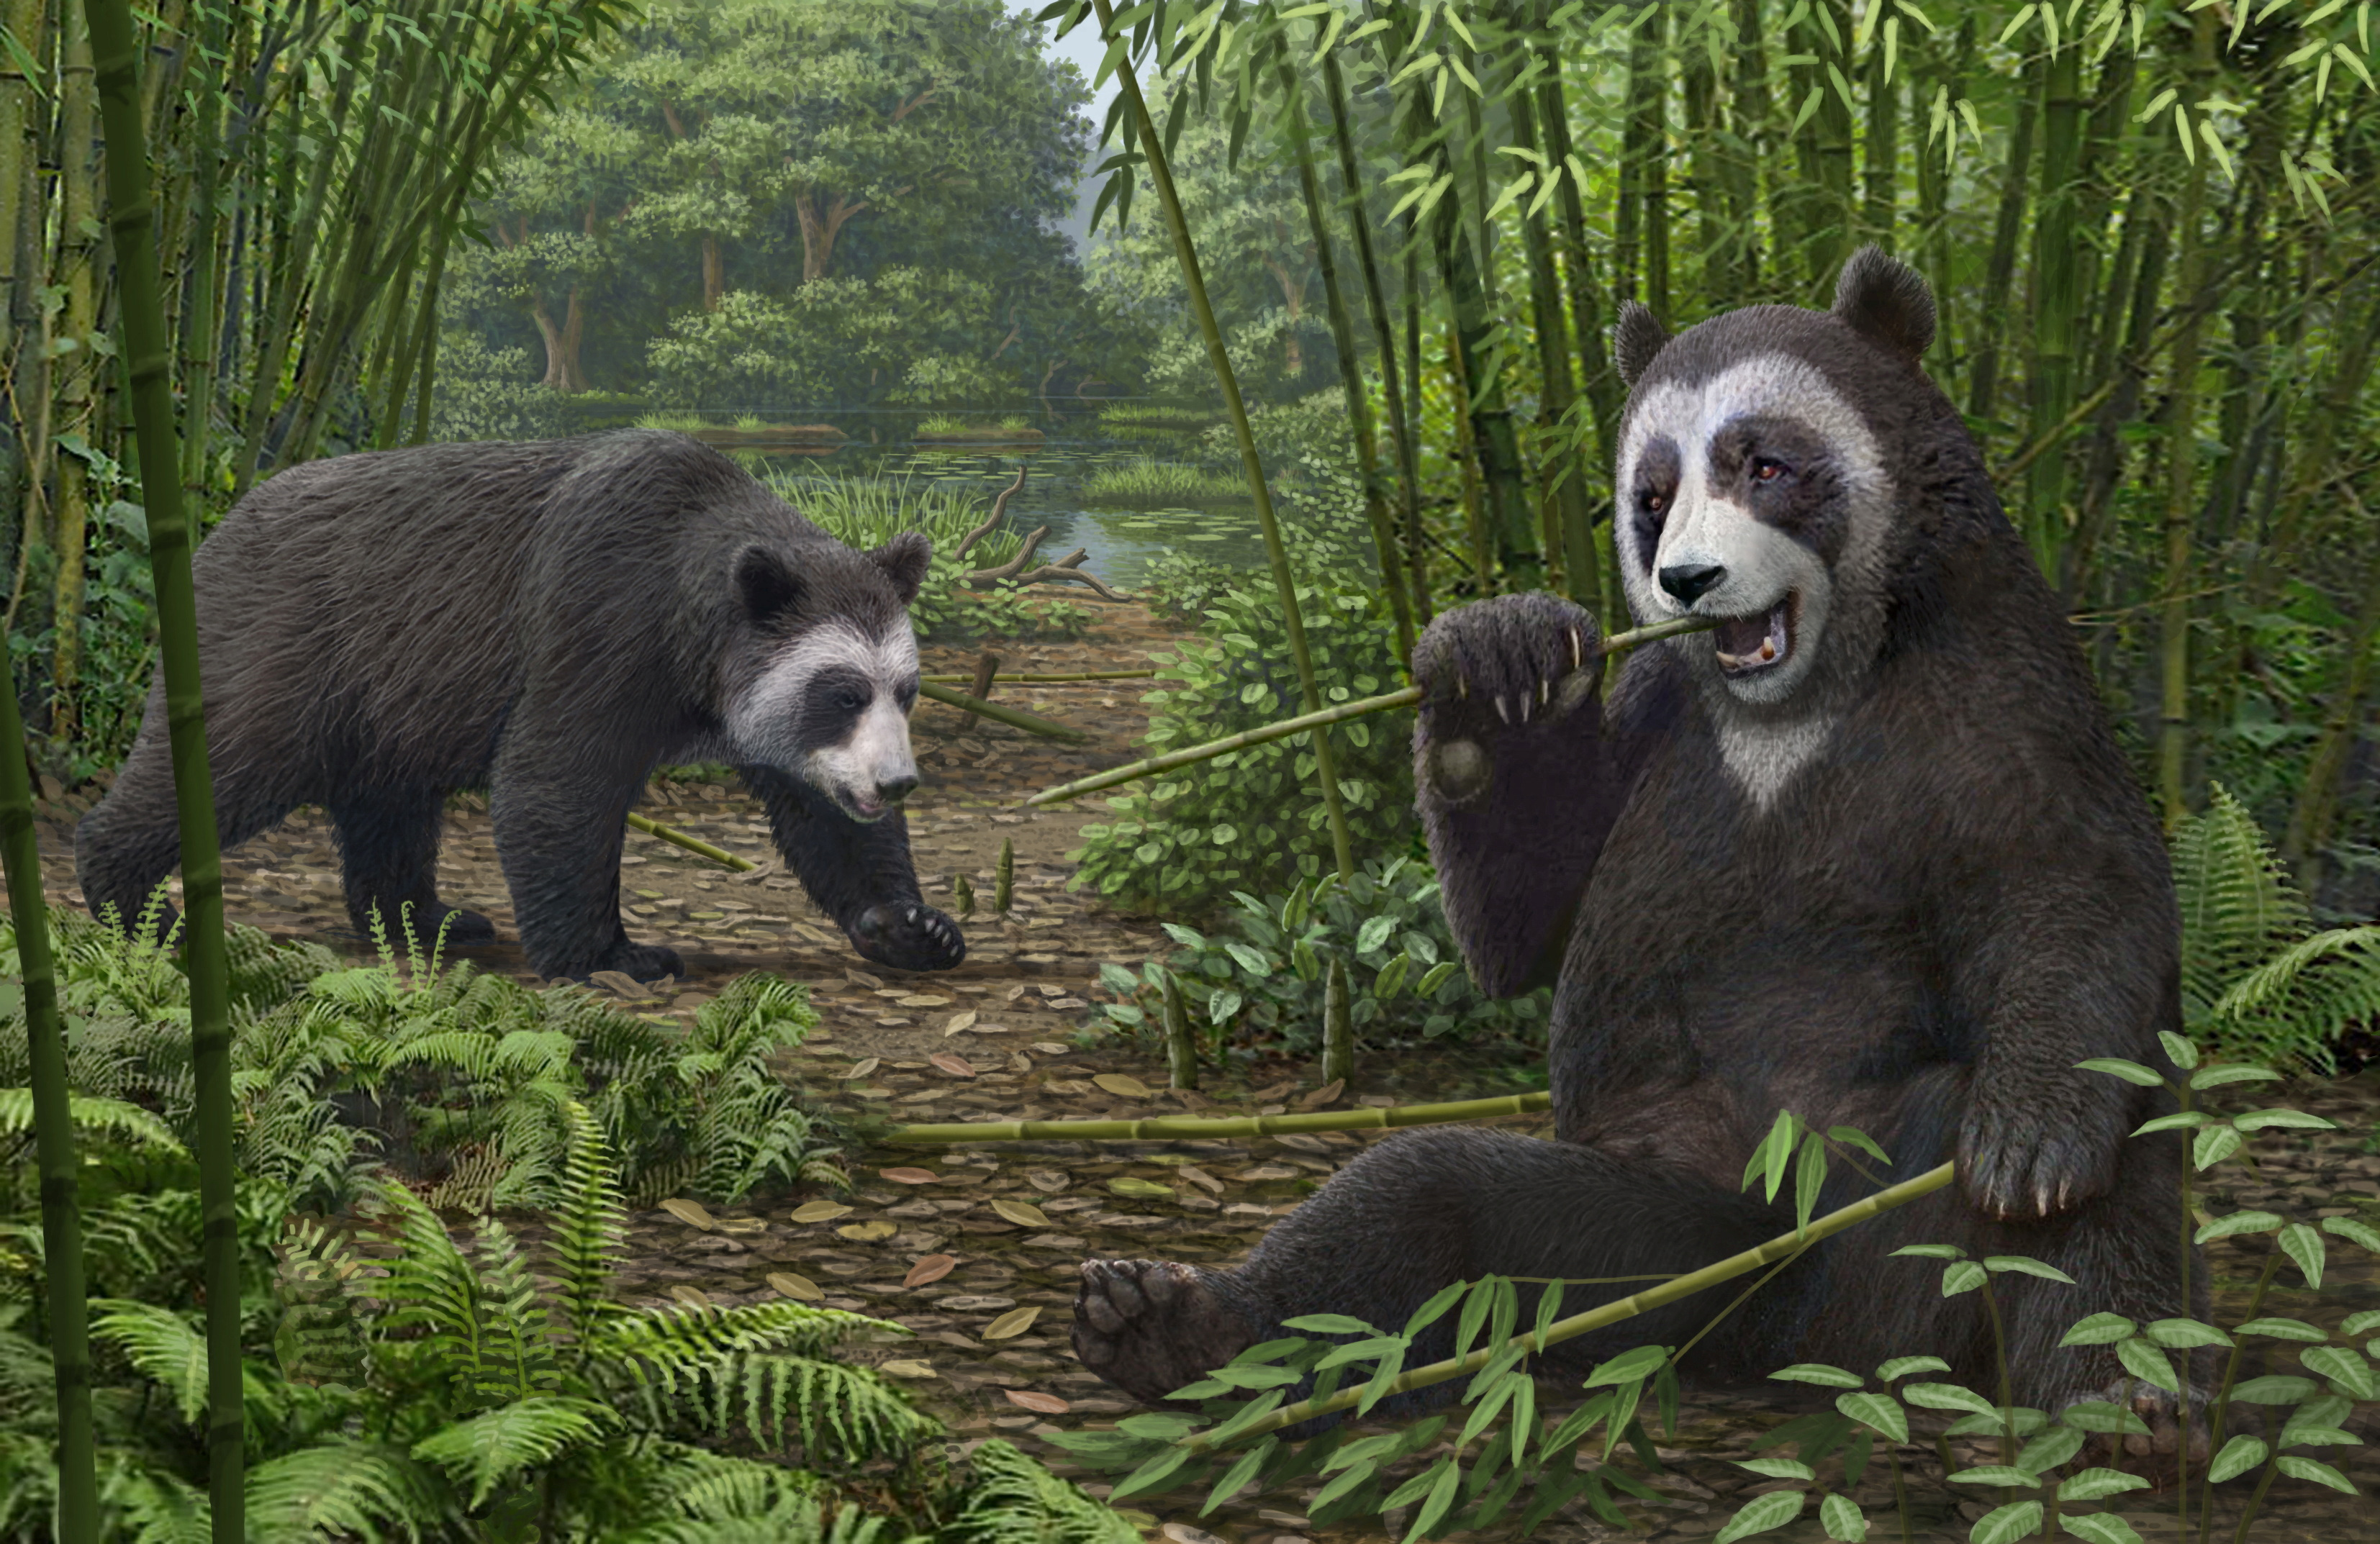 La reconstrucción de un artista muestra otra especie de panda, el extinto Ailurarctos que vivió hace unos 6 millones de años, con sus fósiles desenterrados cerca de la ciudad de Zhaotong en la provincia norteña de Yunnan en China, en esta ilustración sin fecha. Mauricio Anton/Folleto vía REUTERS